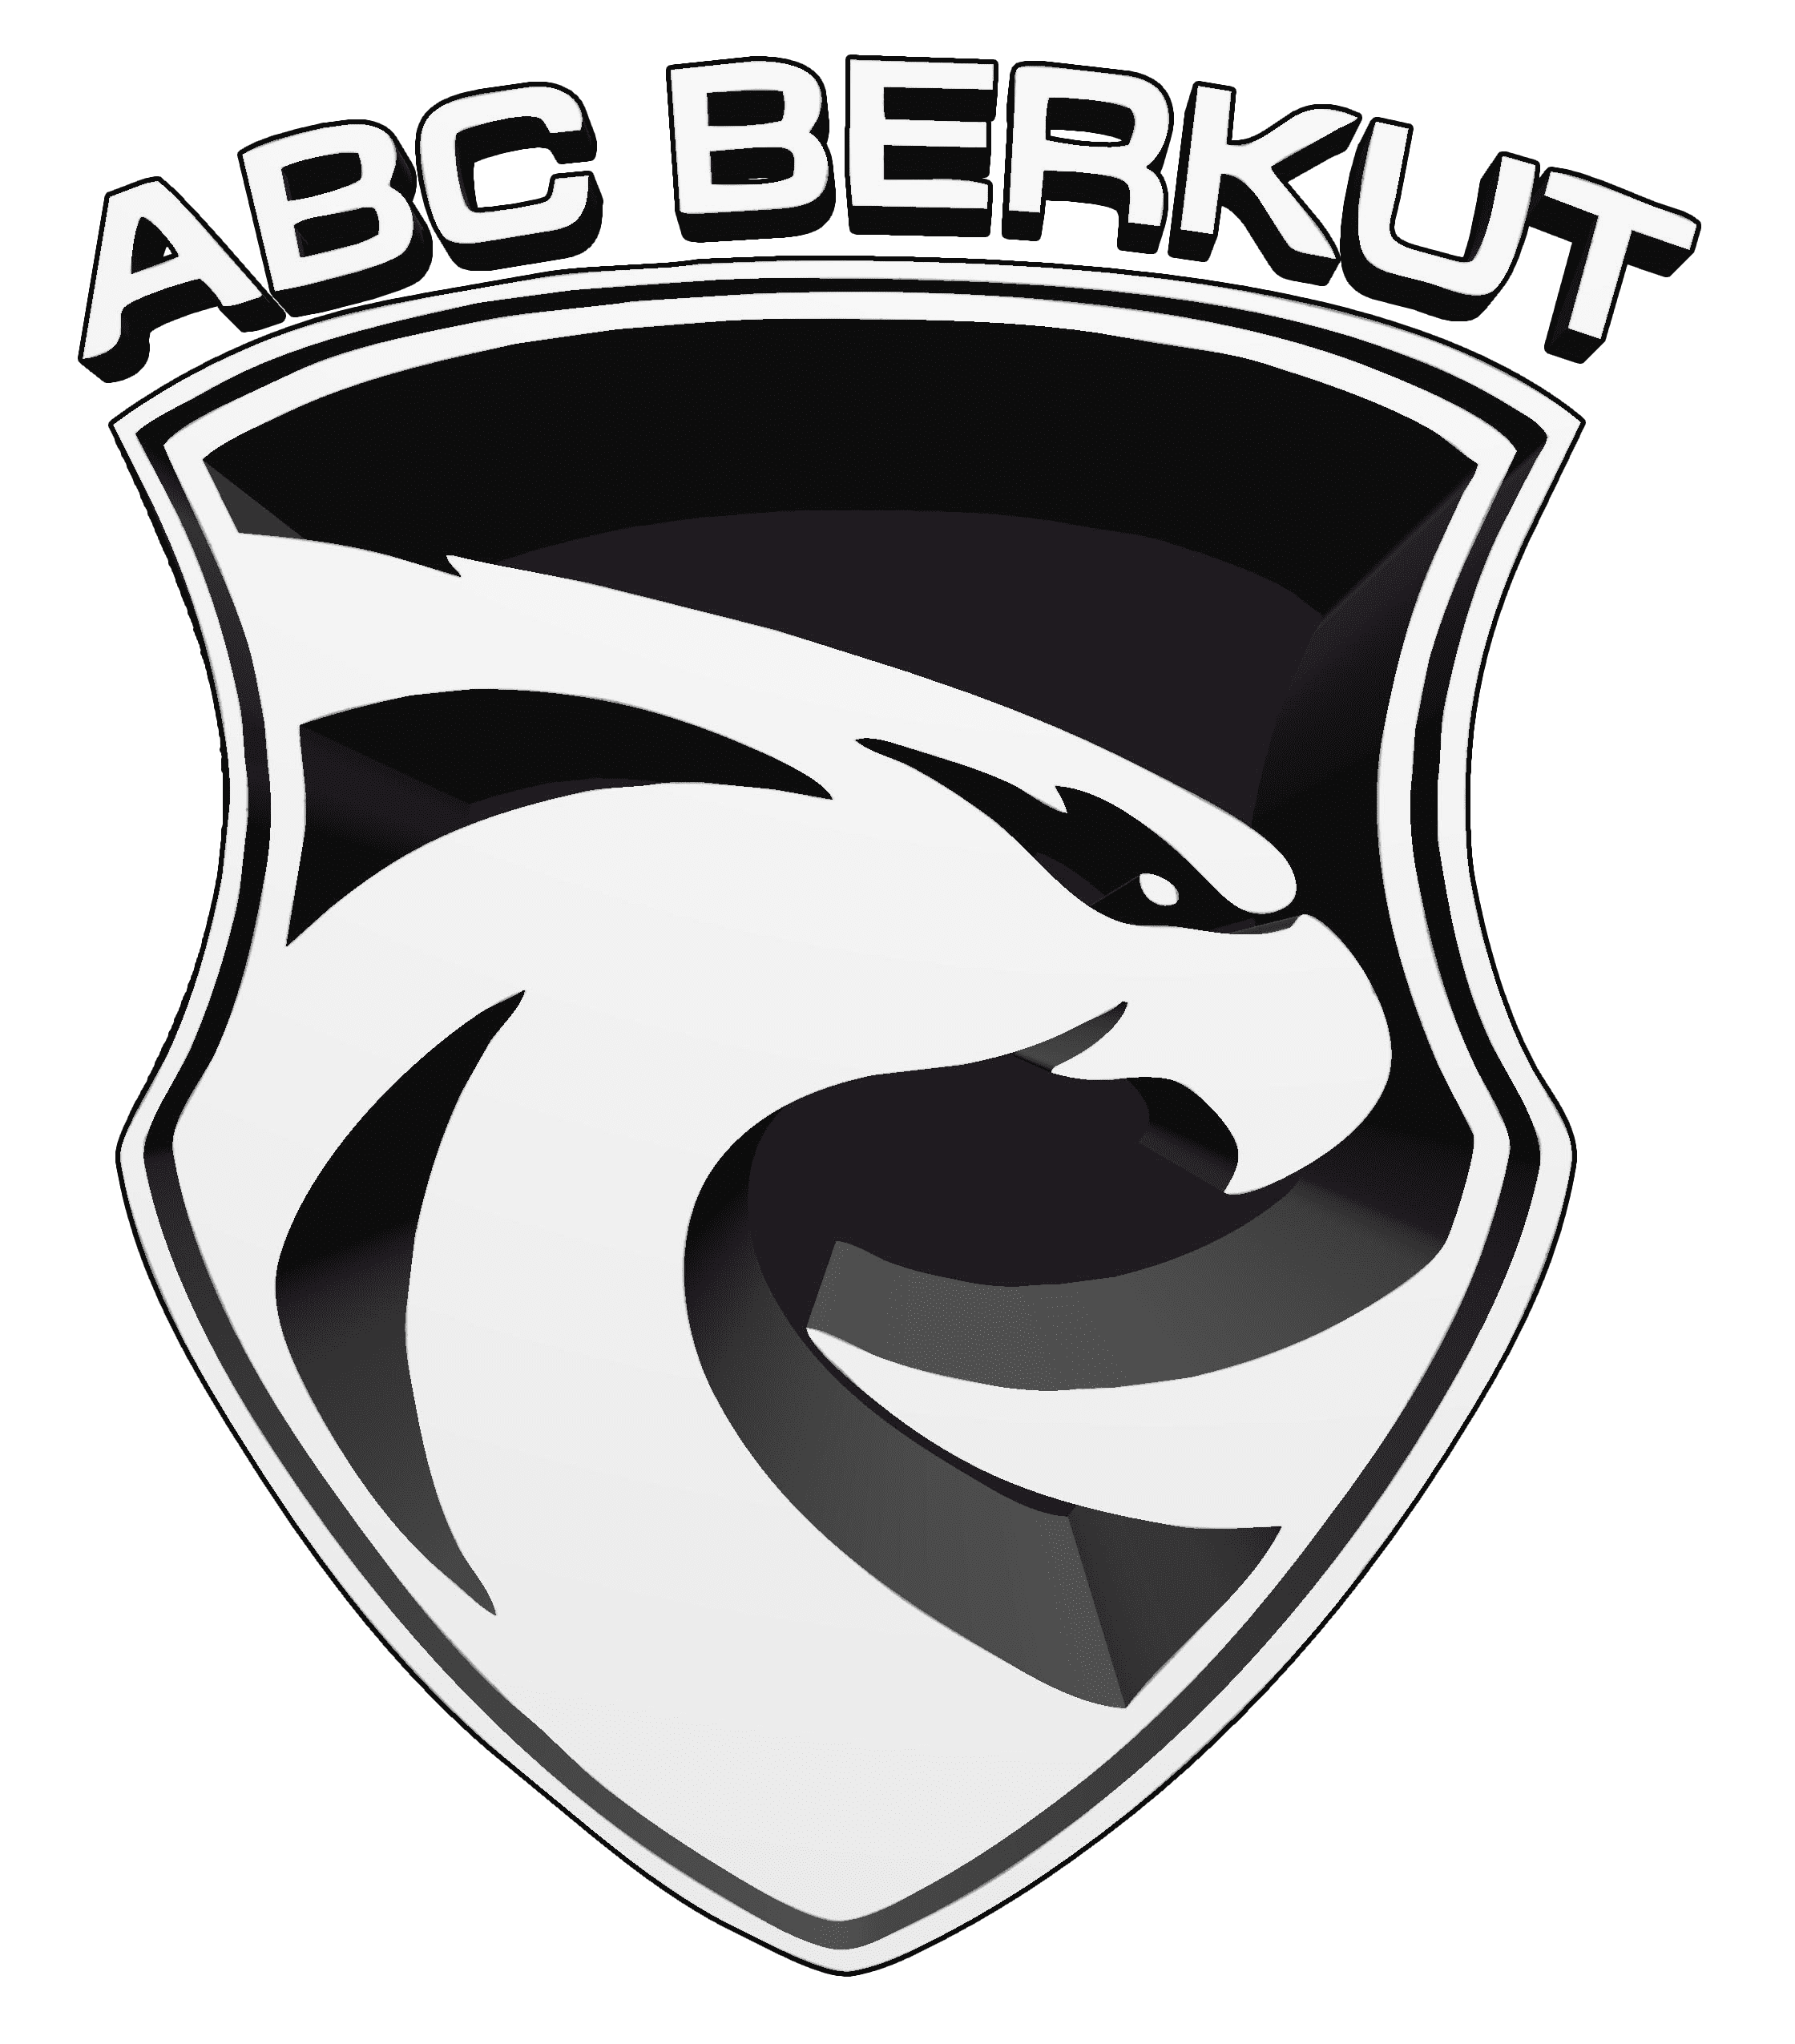 ТОО Охранное агентство ABC BERKUT Логотип(logo)